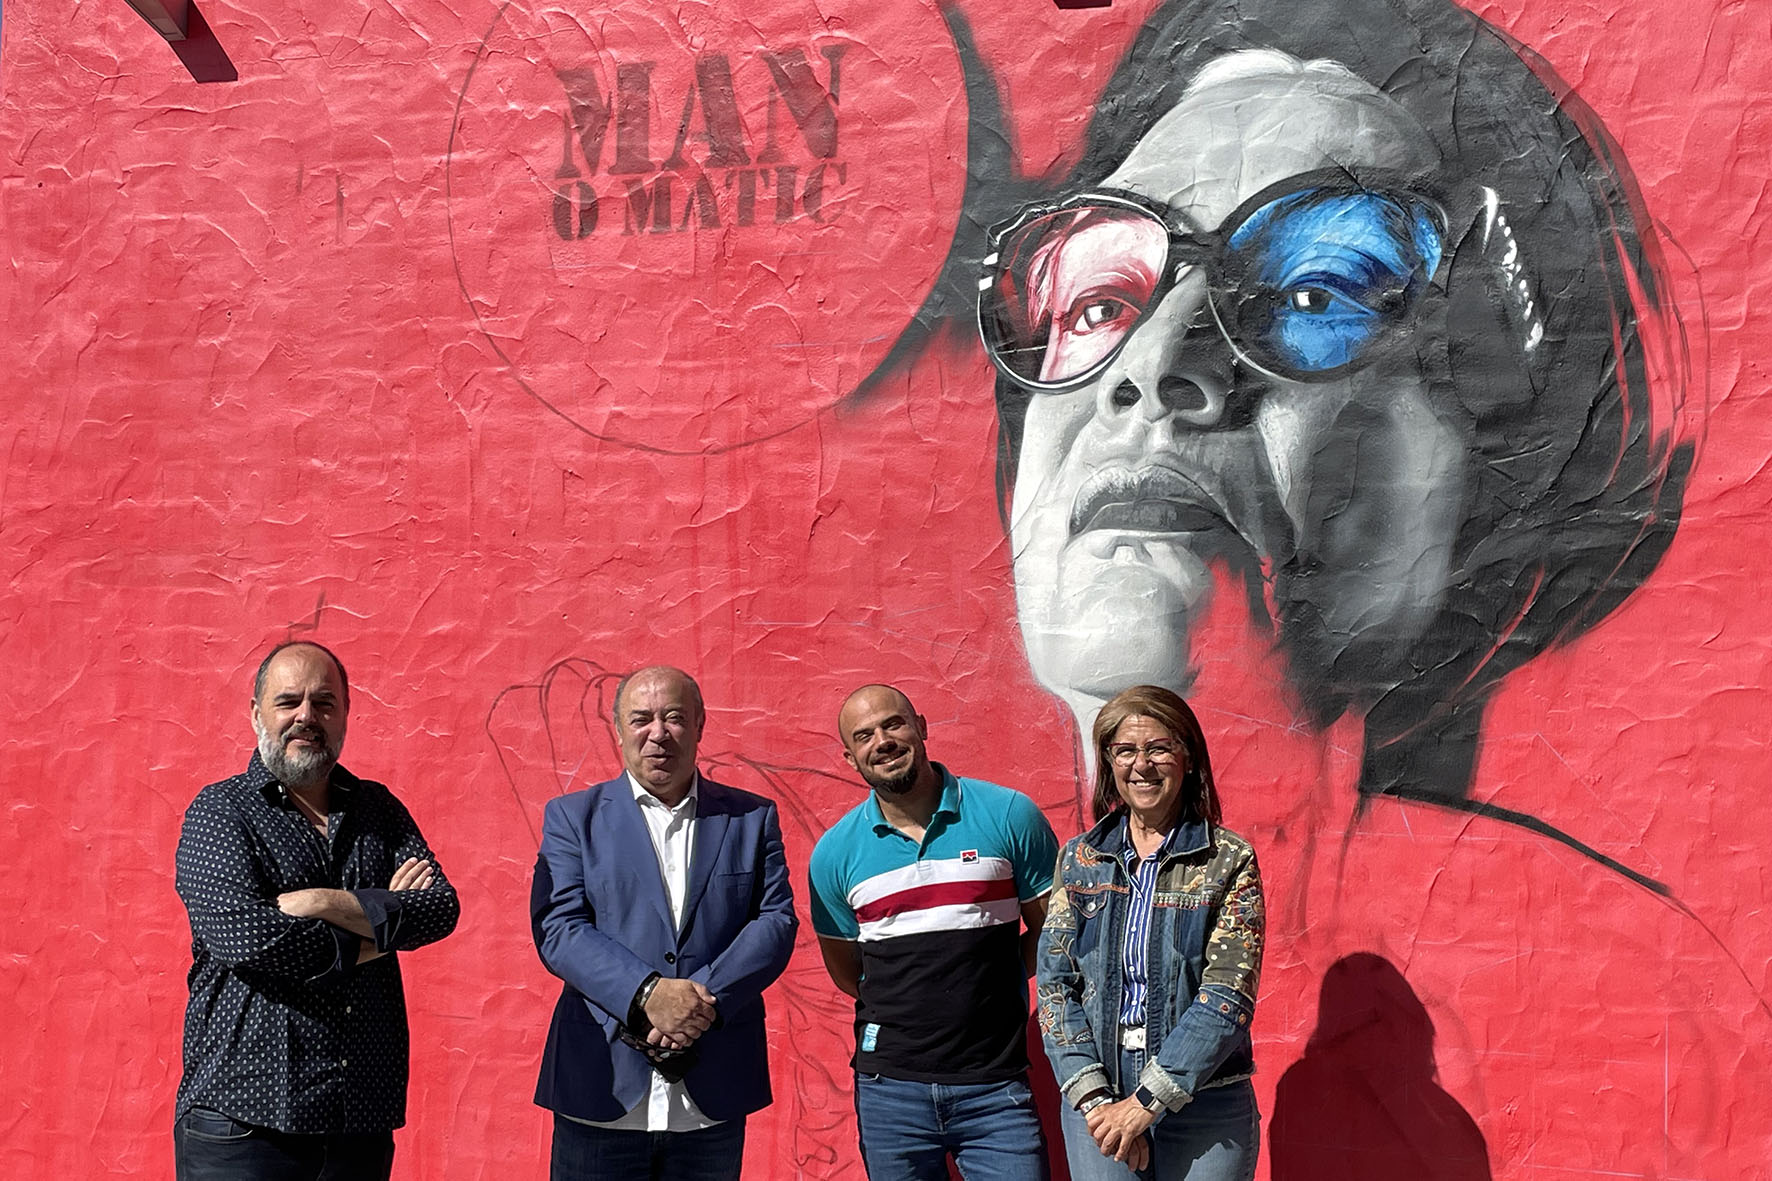 Visita al futuro mural de arte urbano del artista grafitero Manomatic en el Centro Activo de Islantilla